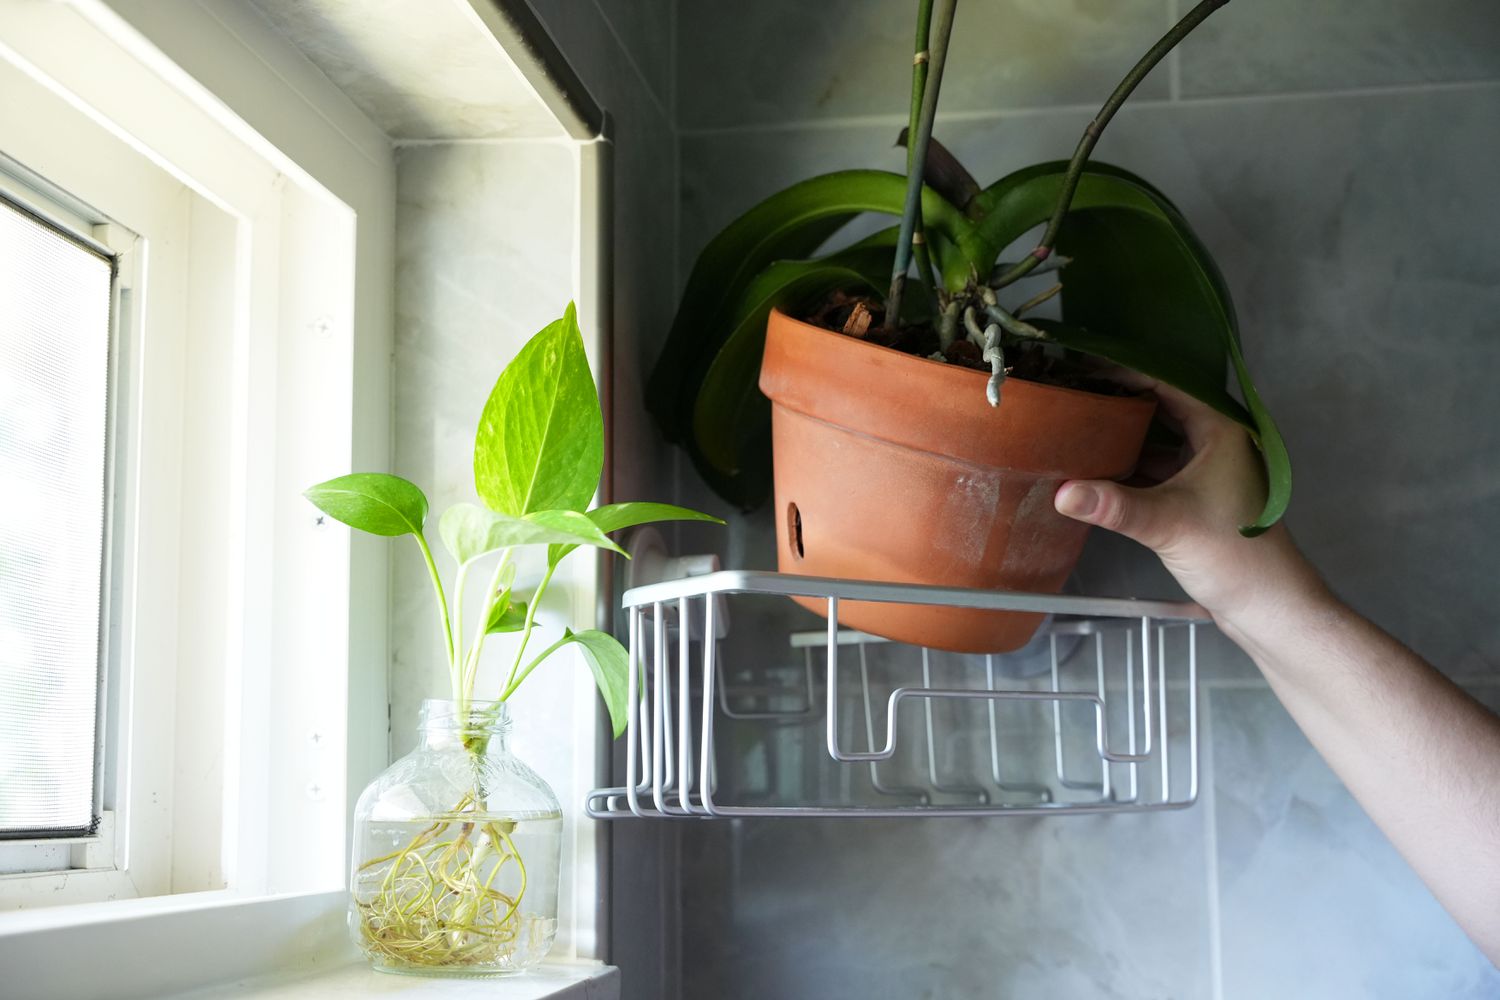 Orchidée rempotée avec racines aériennes placée sur une étagère métallique près d'une fenêtre lumineuse